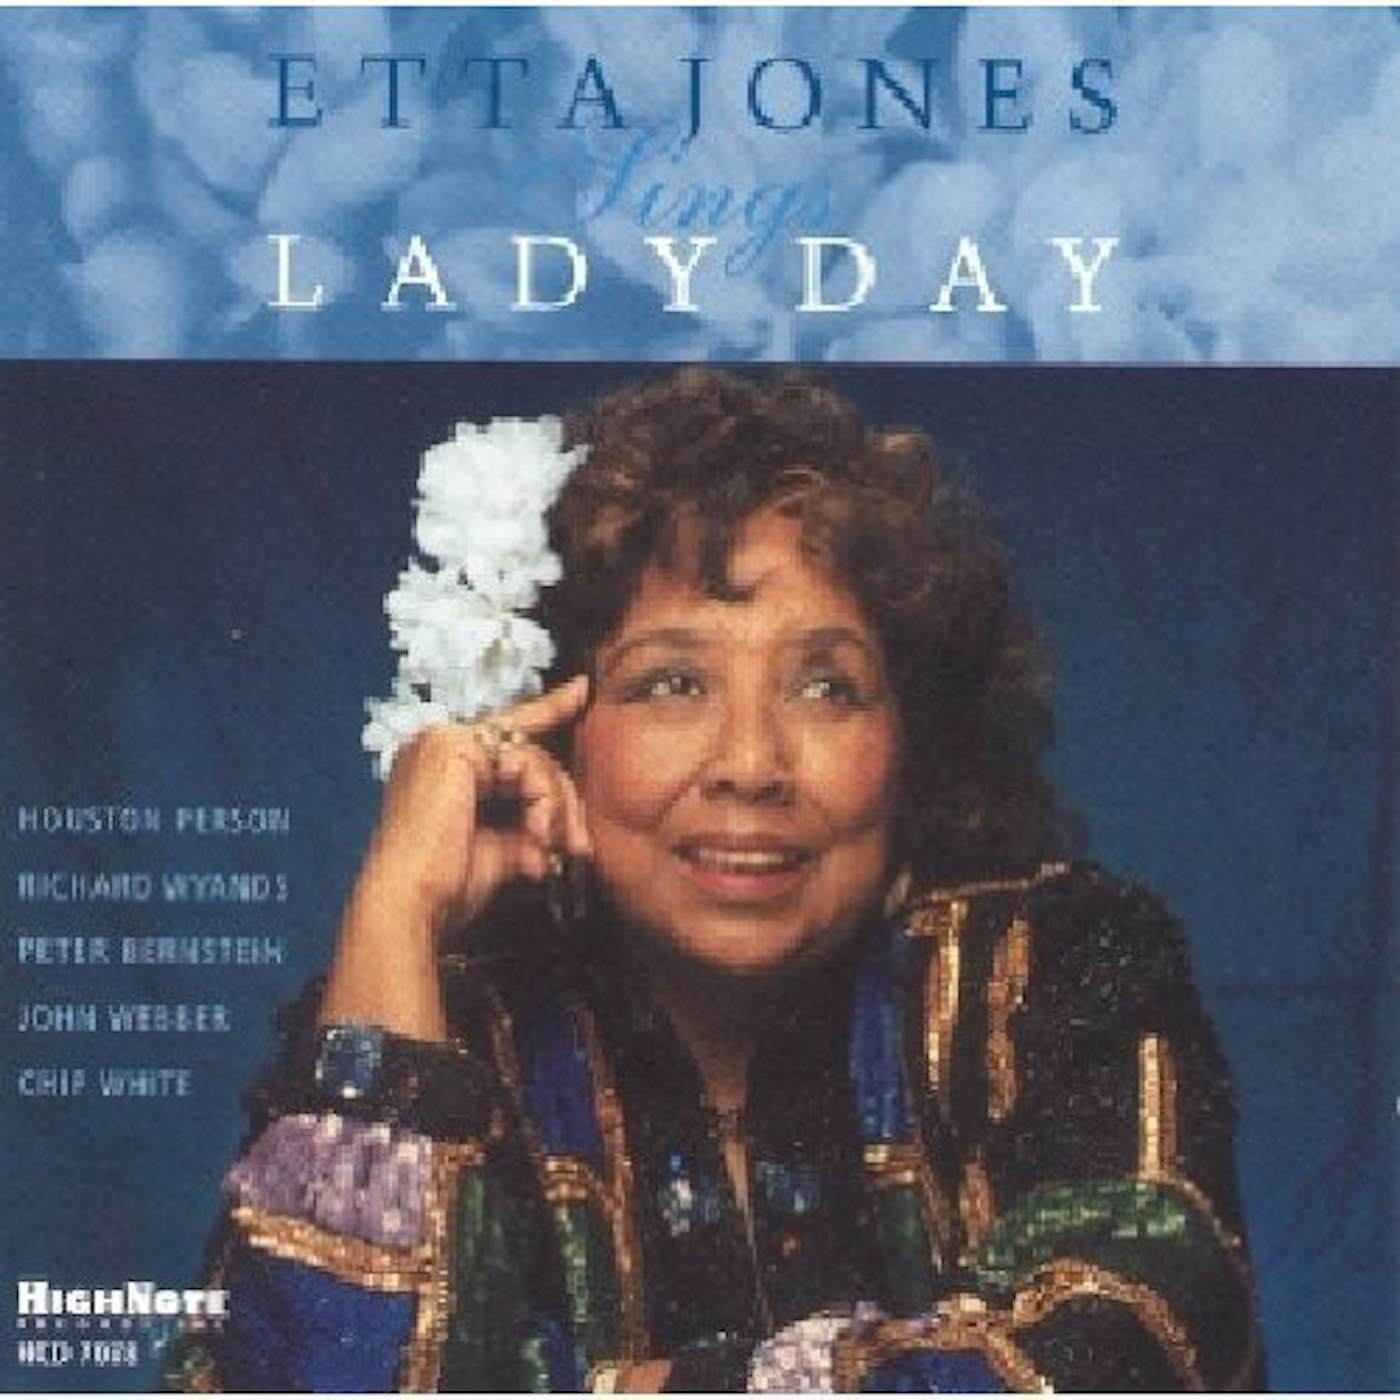 ETTA JONES SINGS LADY DAY CD